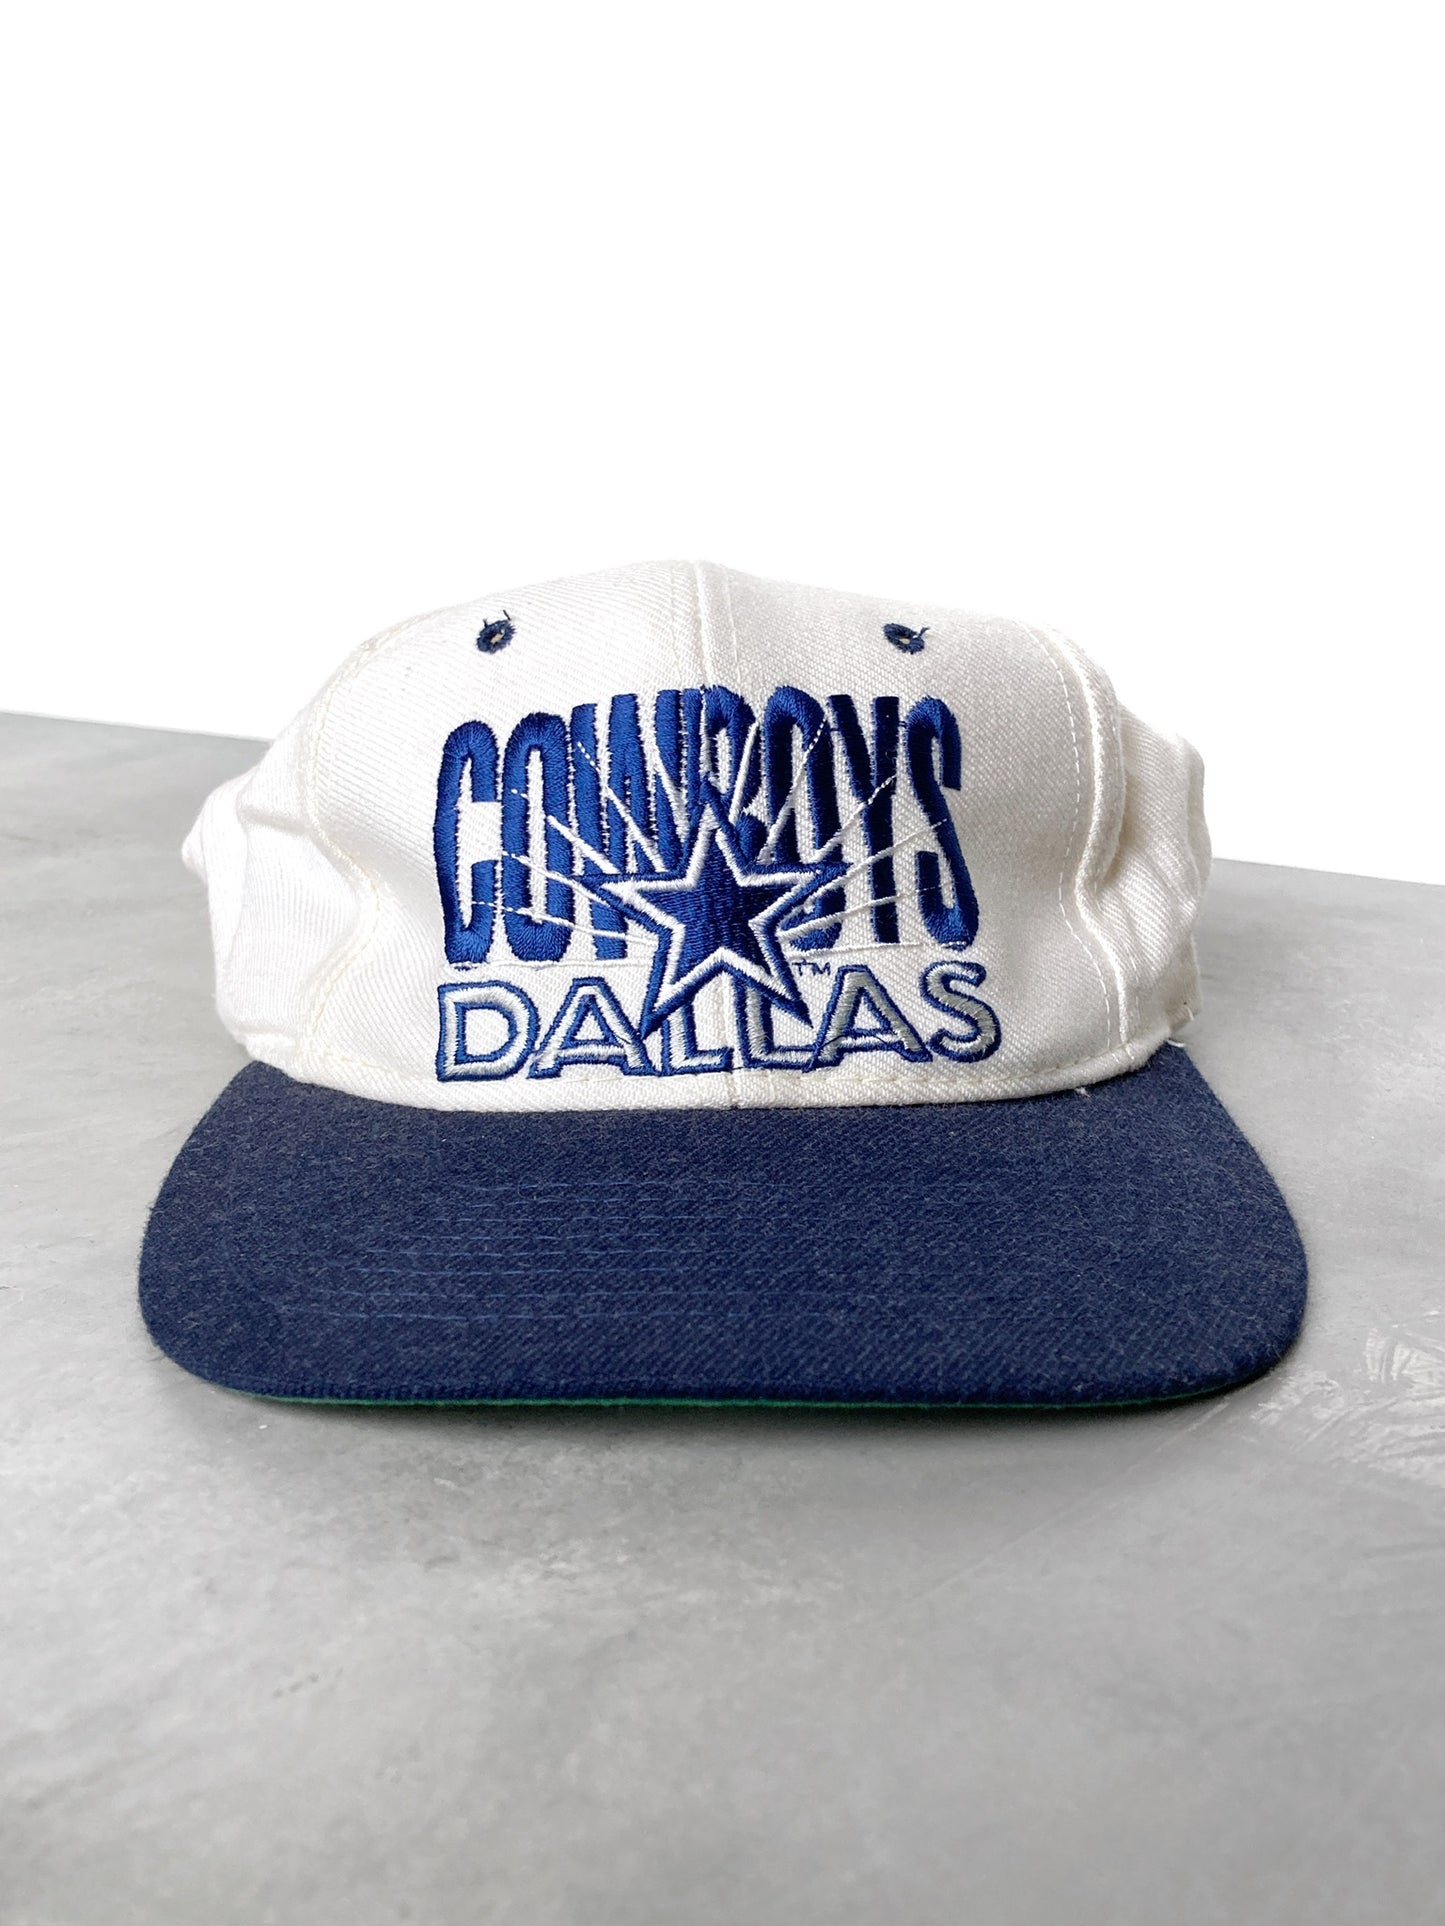 Dallas Cowboys Hat 90's